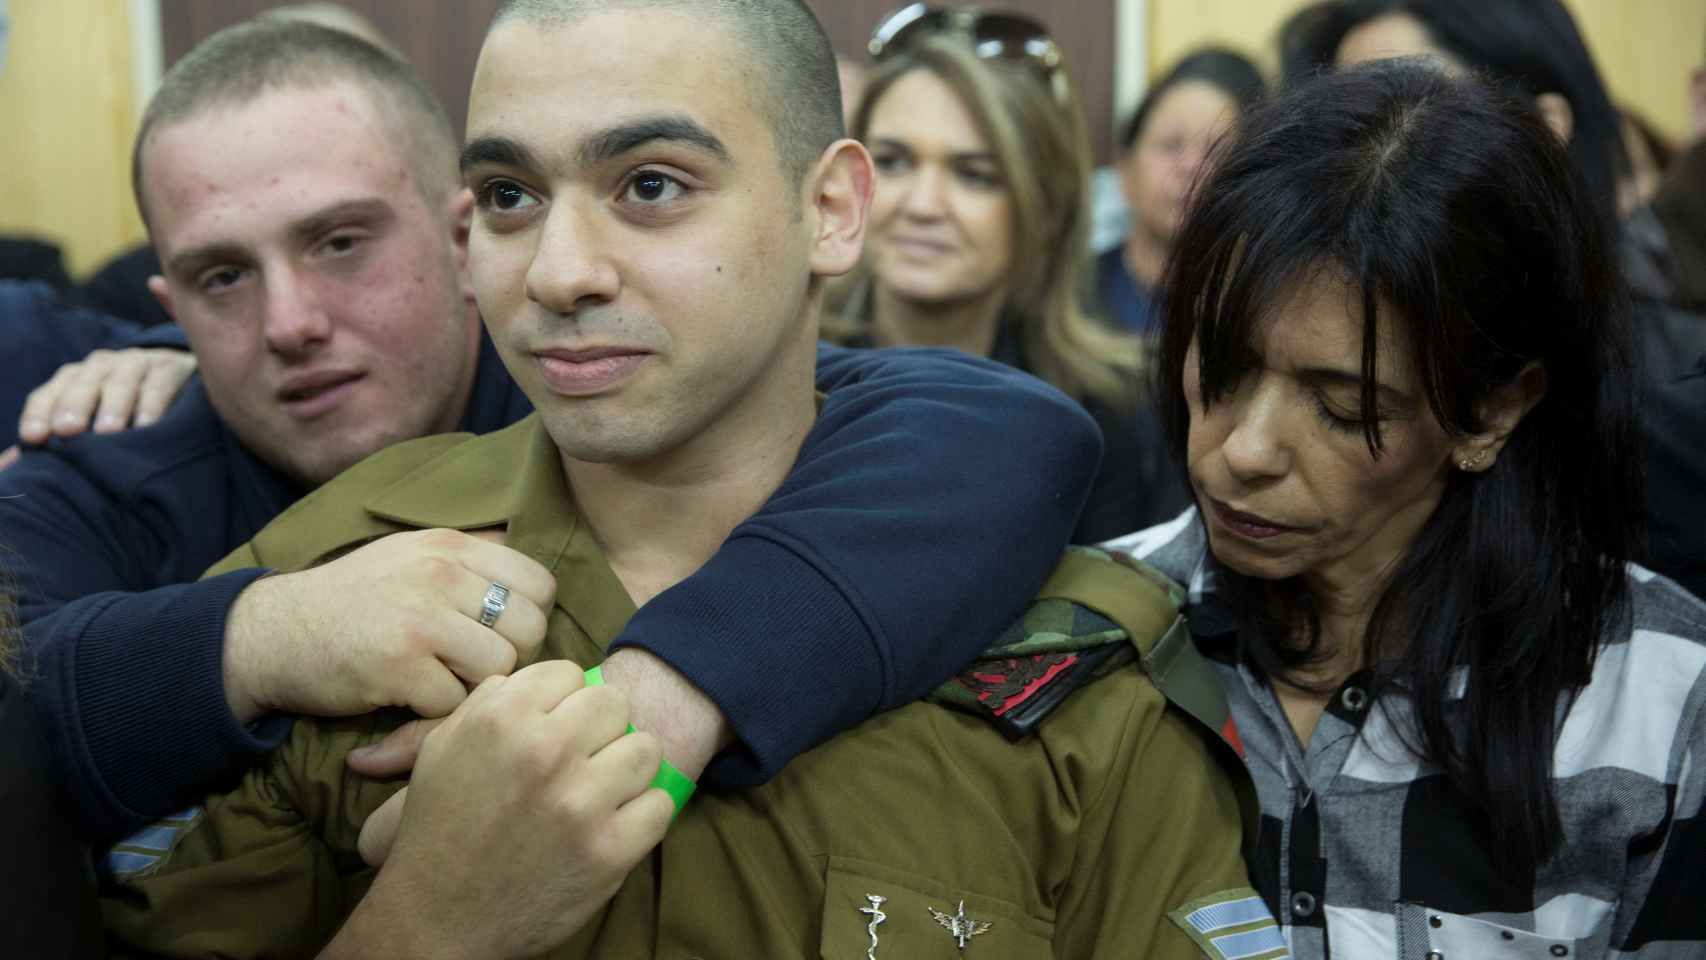 El soldado israelí, esperando su condena.